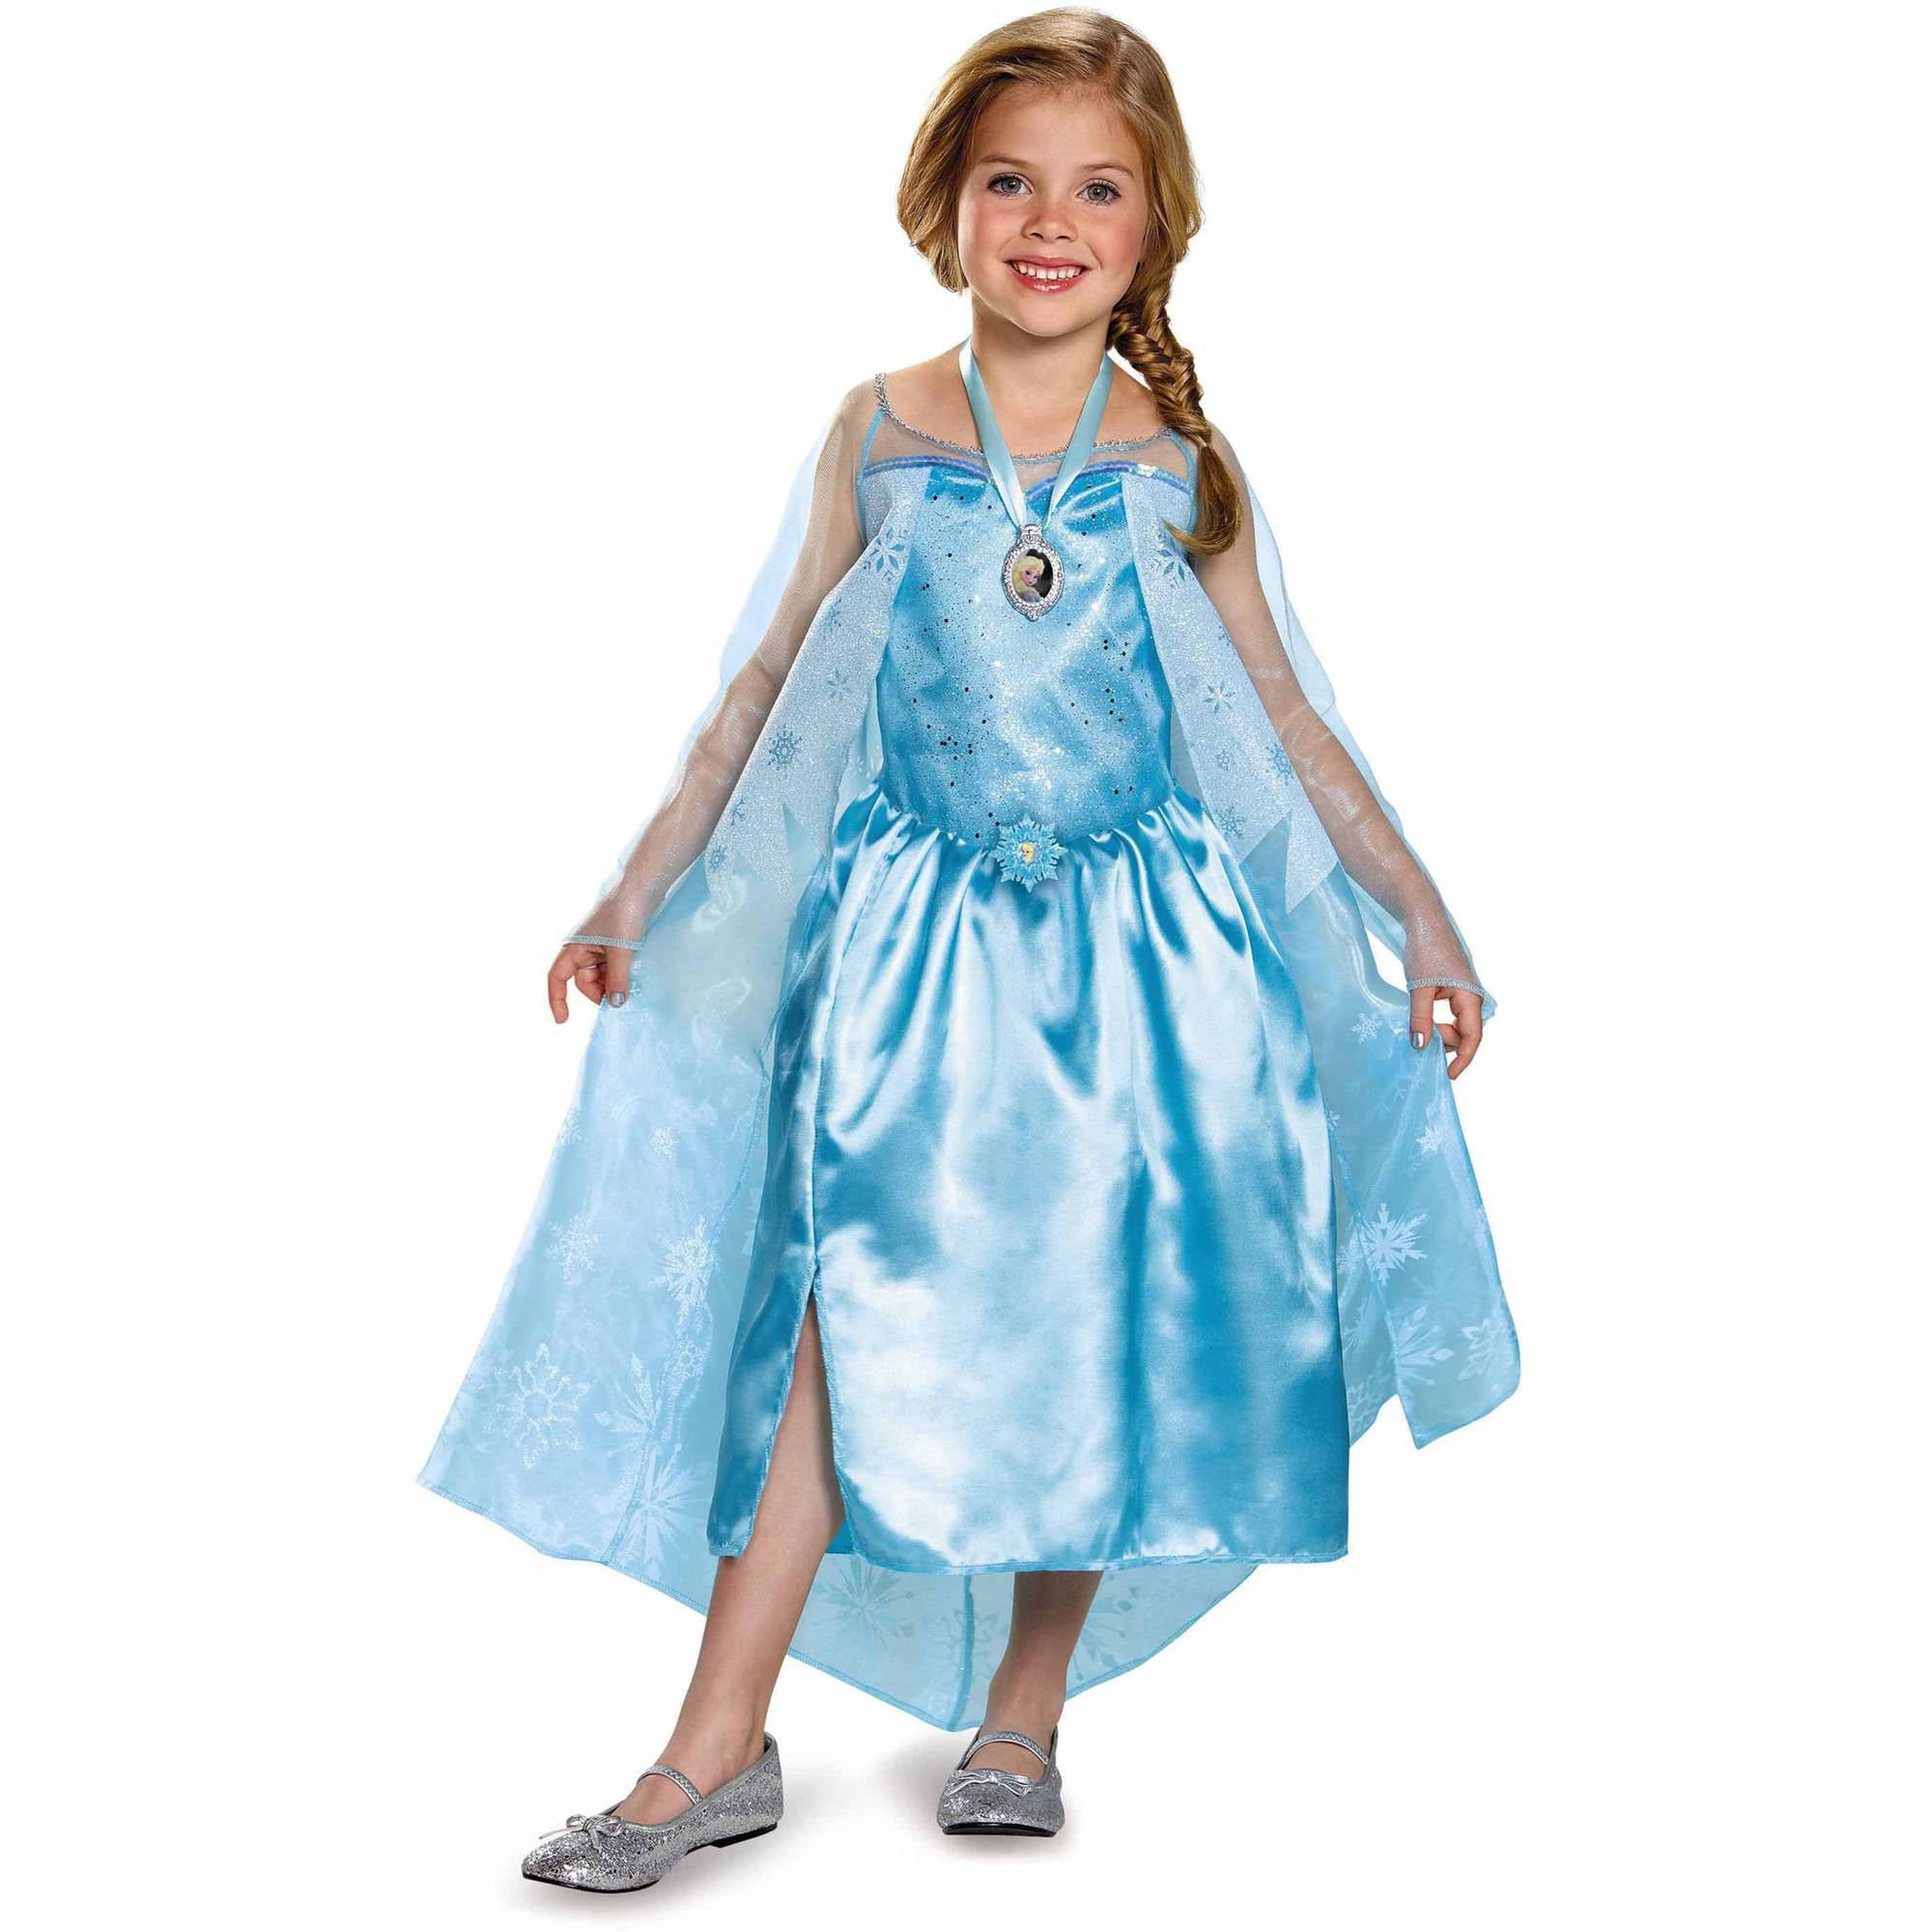 Kids' Costumes Toys Toys & Games Elsa Costume | Elsa inspired dress ...